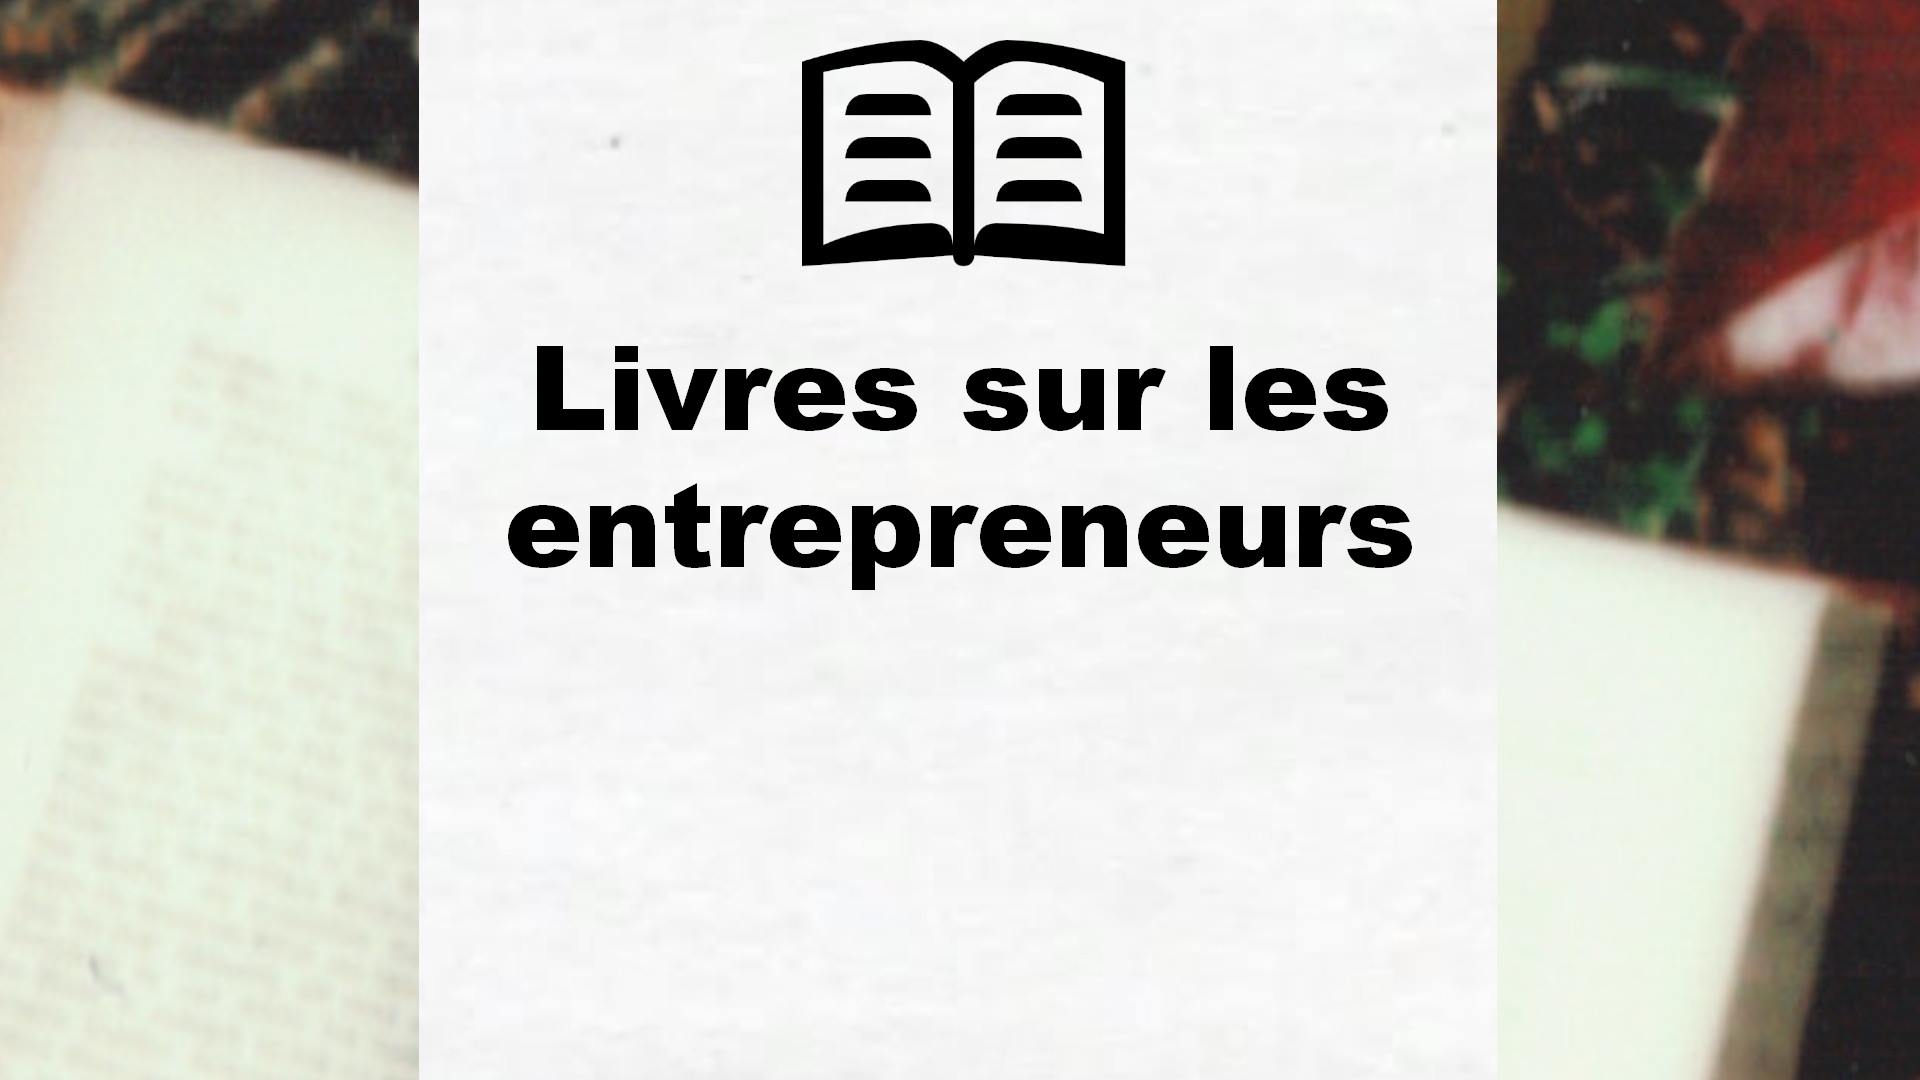 Livres sur les entrepreneurs